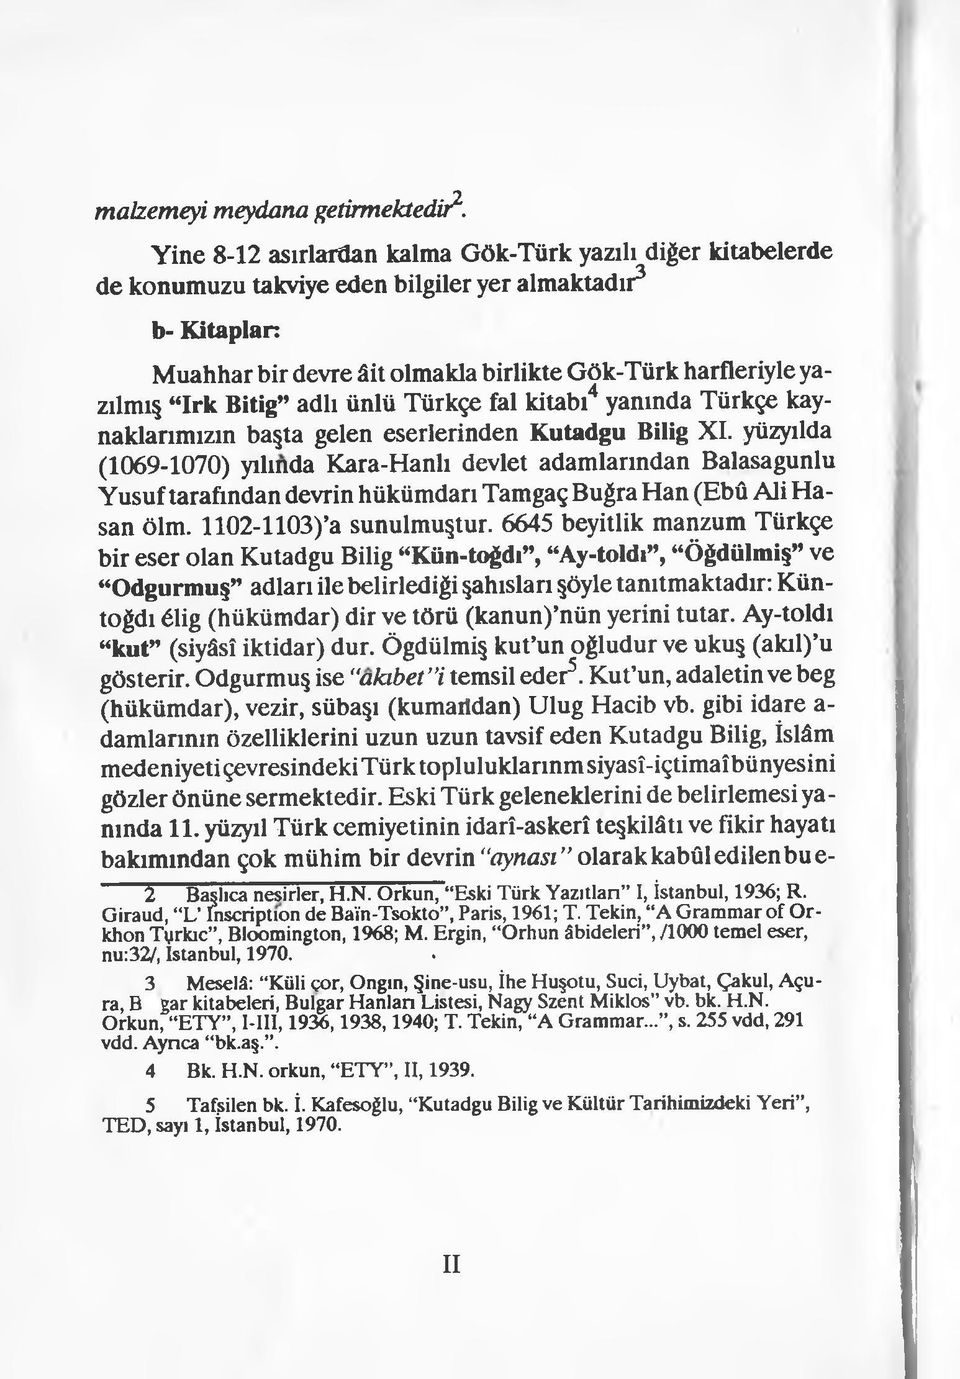 Bitig adlı ünlü Türkçe fal kitabı4 yanında Türkçe kaynaklarımızın başta gelen eserlerinden Kutadgu Bilig XI.